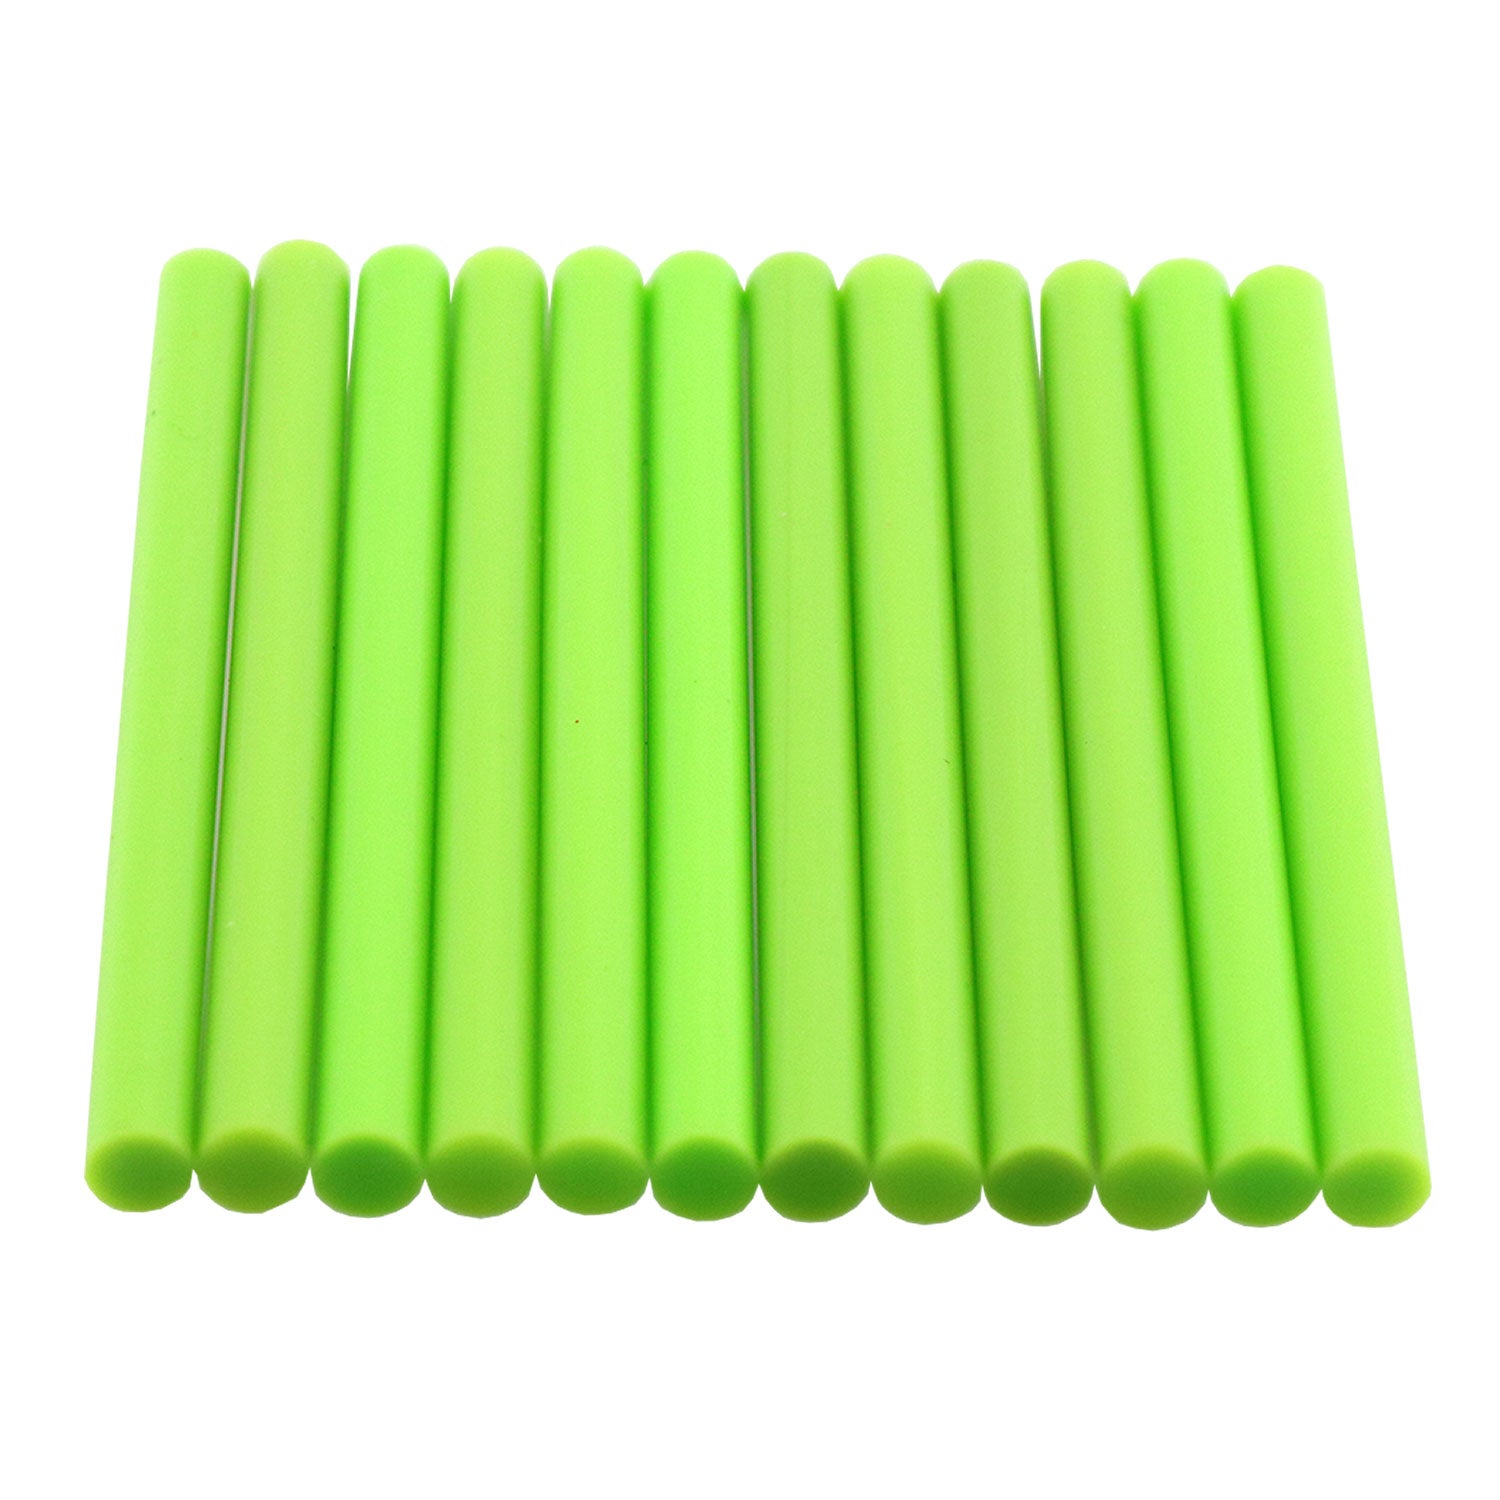 GlueSticksDirect Forest Green Colored Glue Stick mini X 4 24 Sticks -  GlueSticksDirect